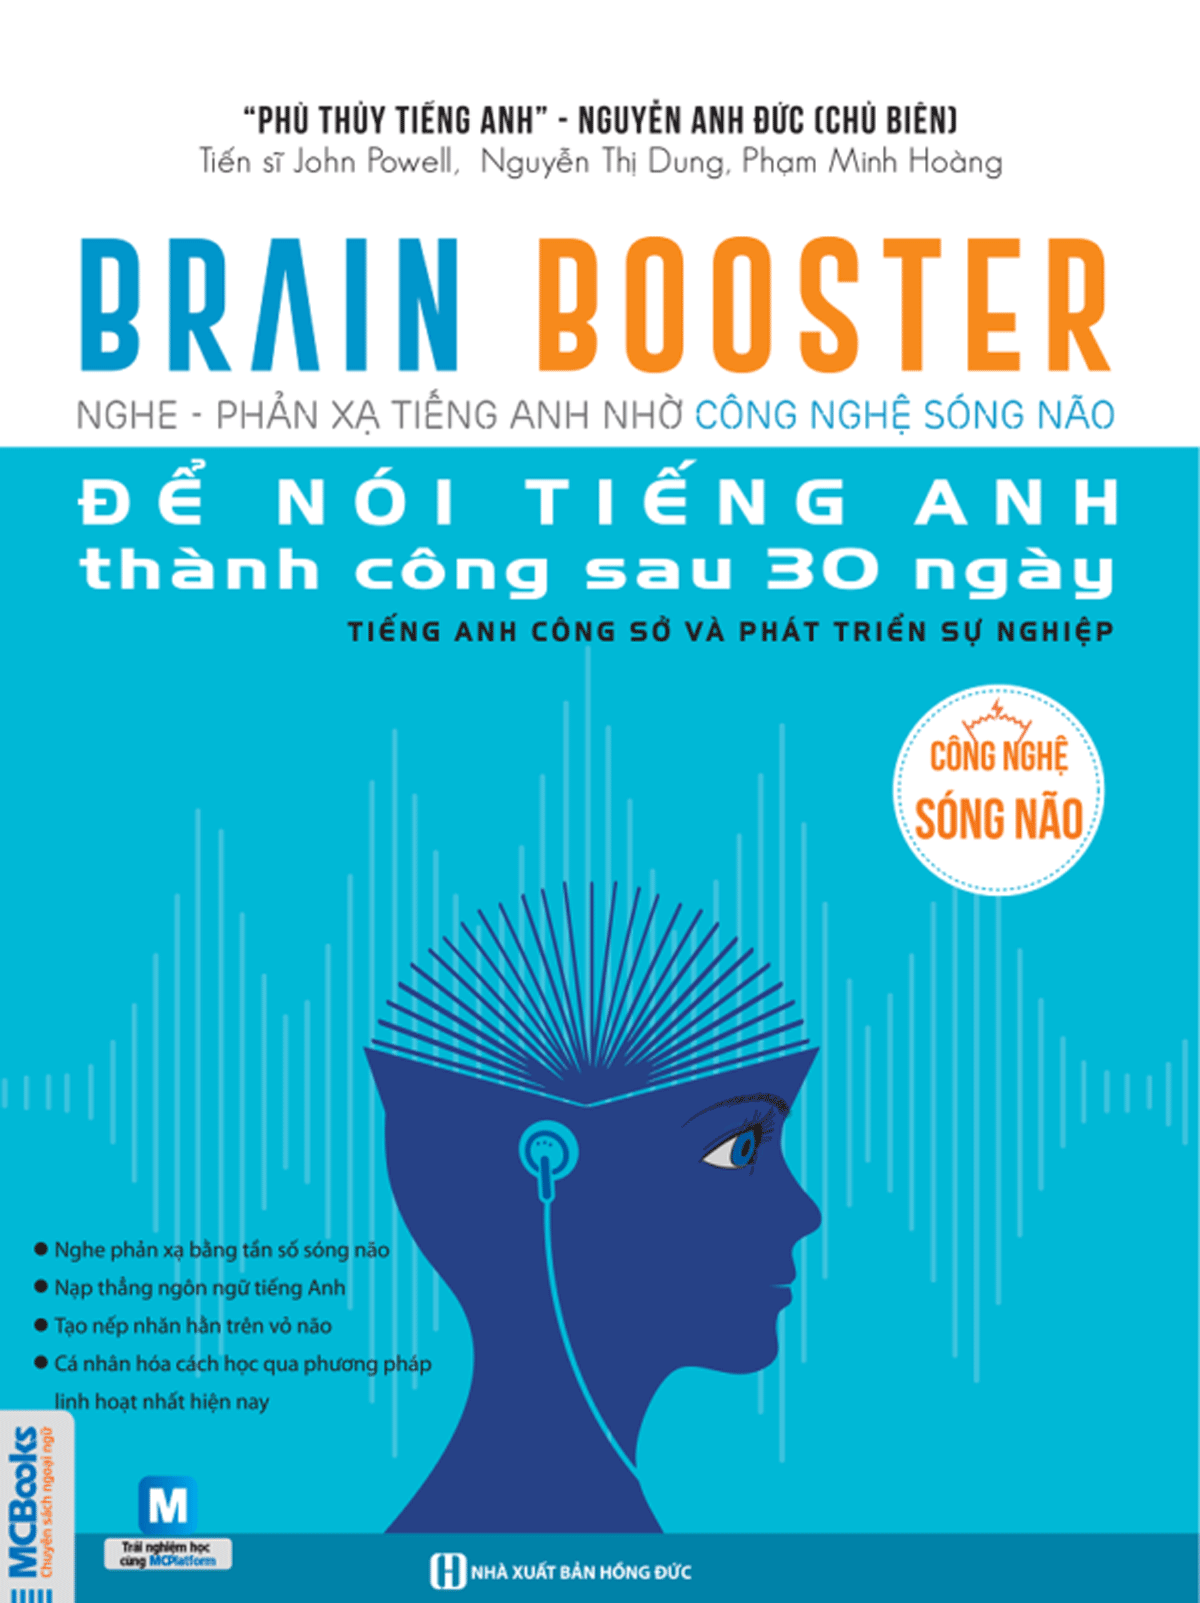 Bìa cuốn sách "Brain Booster - Để nói tiếng Anh thành công sau 30 ngày"